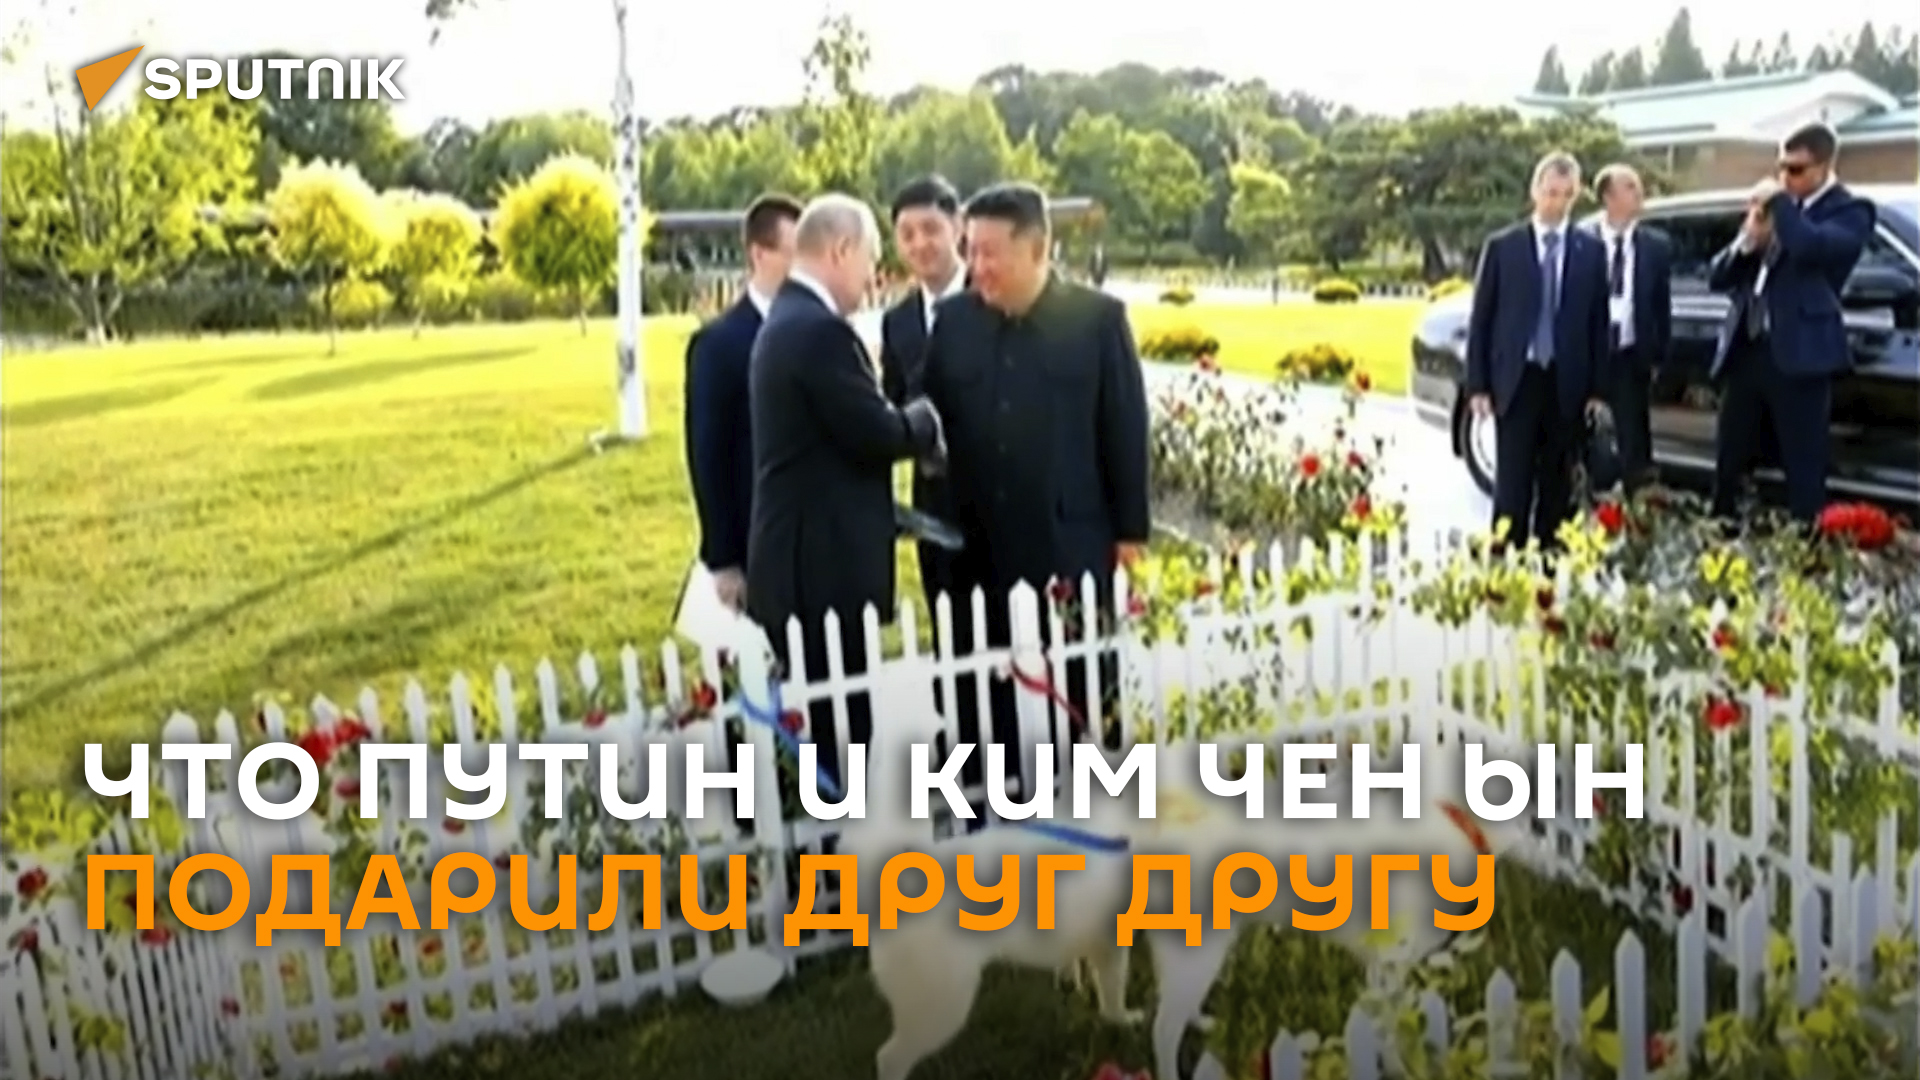 Аурус в обмен на собак редкой породы: что Путин и Ким Чен Ын подарили друг другу